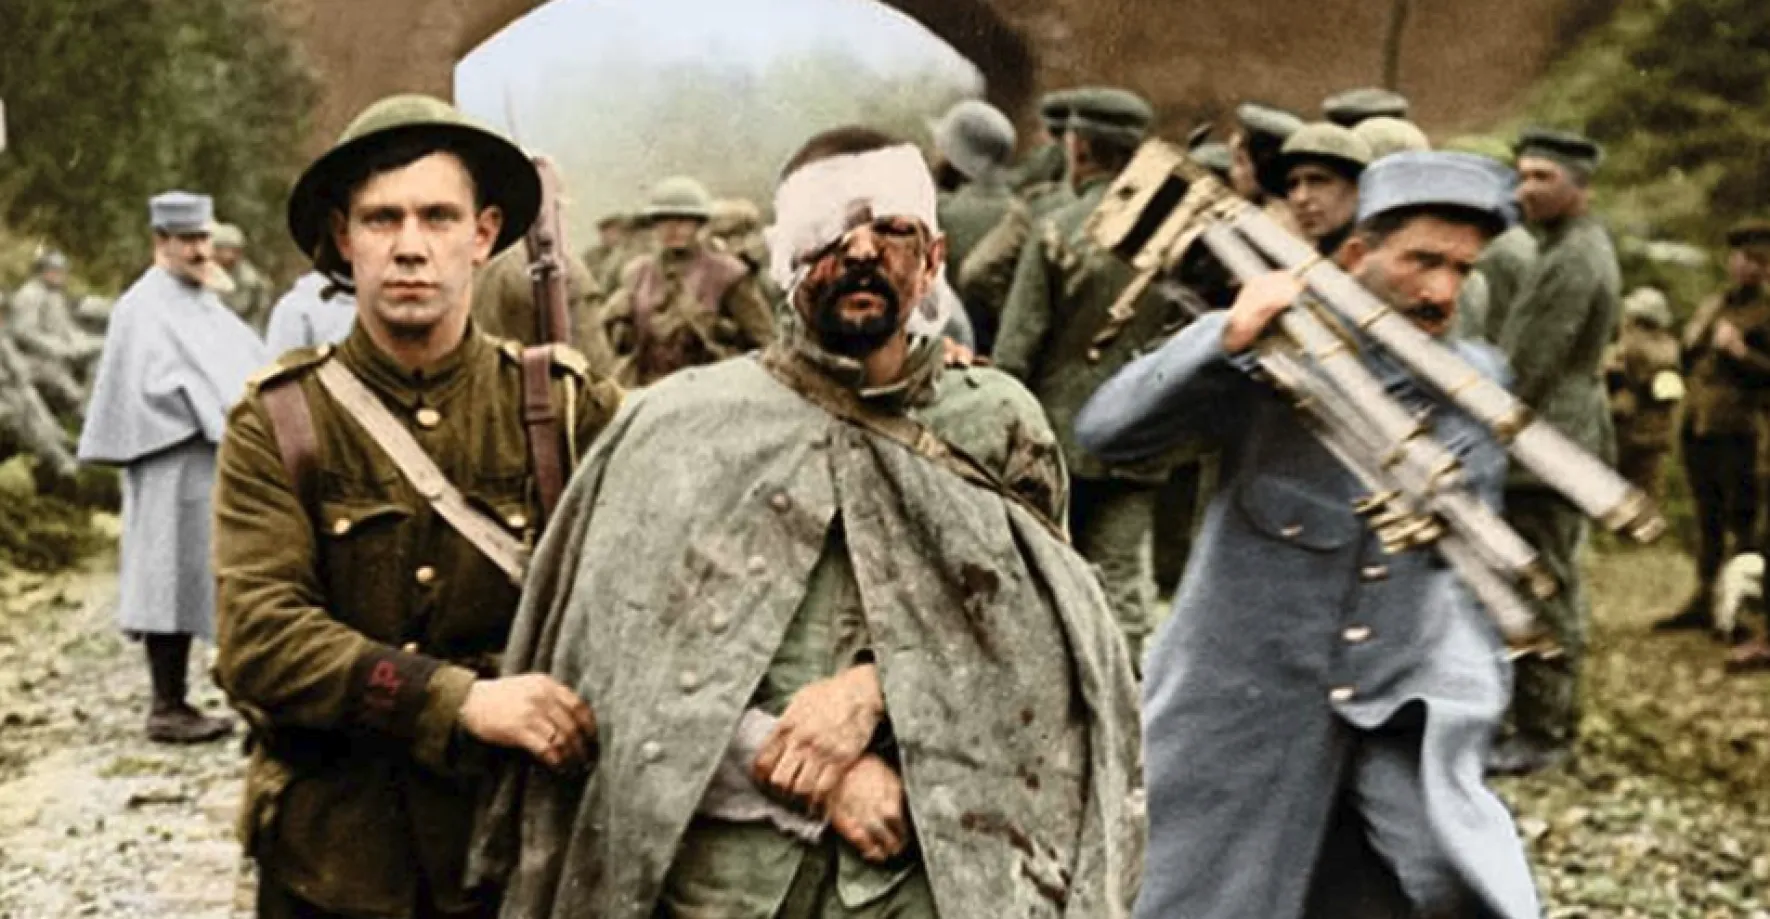 FOTOGALERIE: 100 let od konce Velké války. Podívejte se na unikátní kolorované snímky